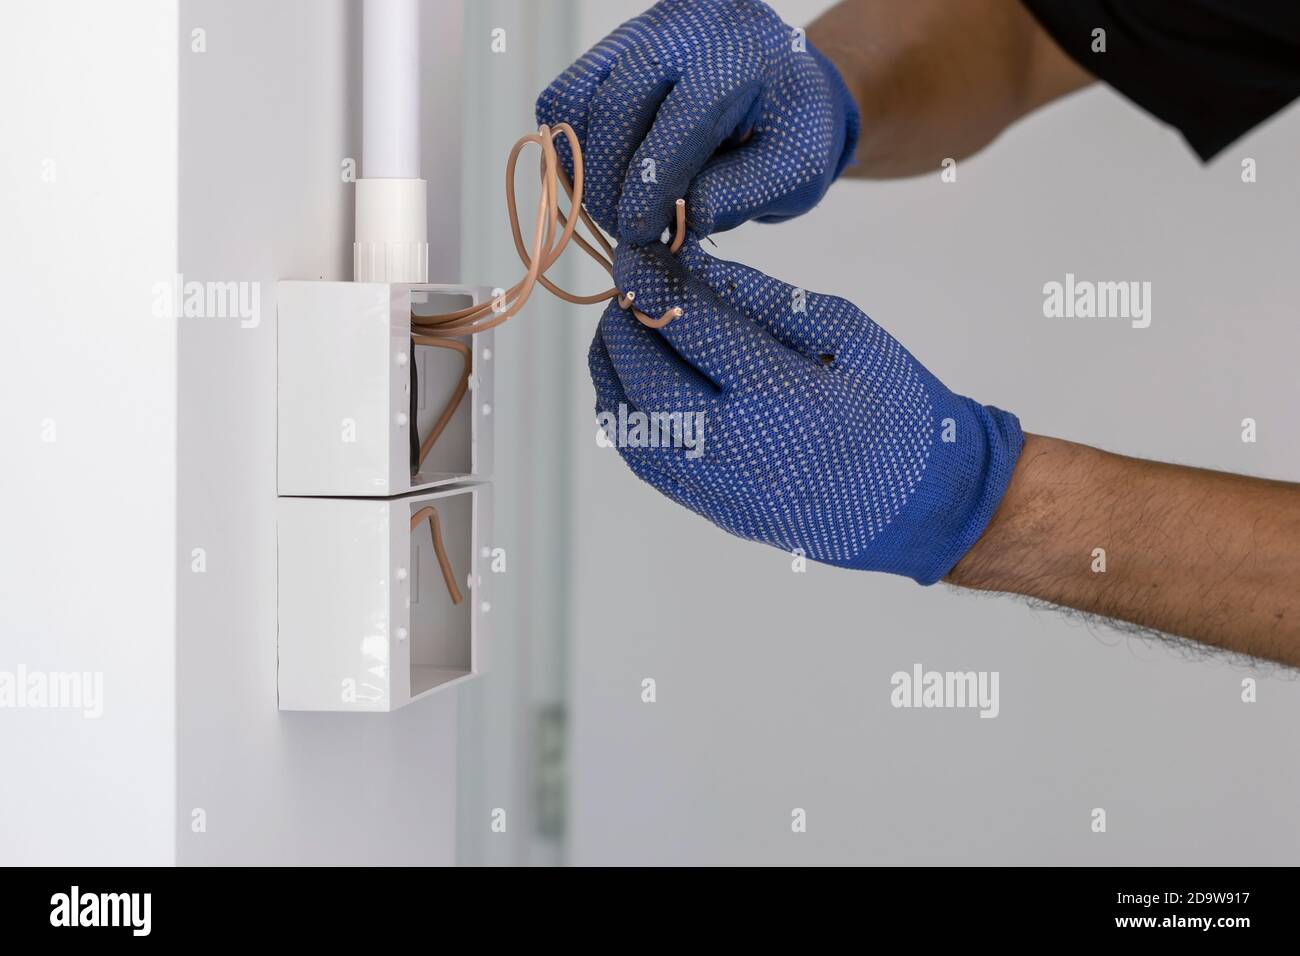 https://c8.alamy.com/compes/2d9w917/el-electricista-usa-guantes-azules-esta-usando-un-cuchillo-electrico-para-cortar-el-cable-para-instalar-el-enchufe-y-el-interruptor-de-alimentacion-en-la-pared-2d9w917.jpg